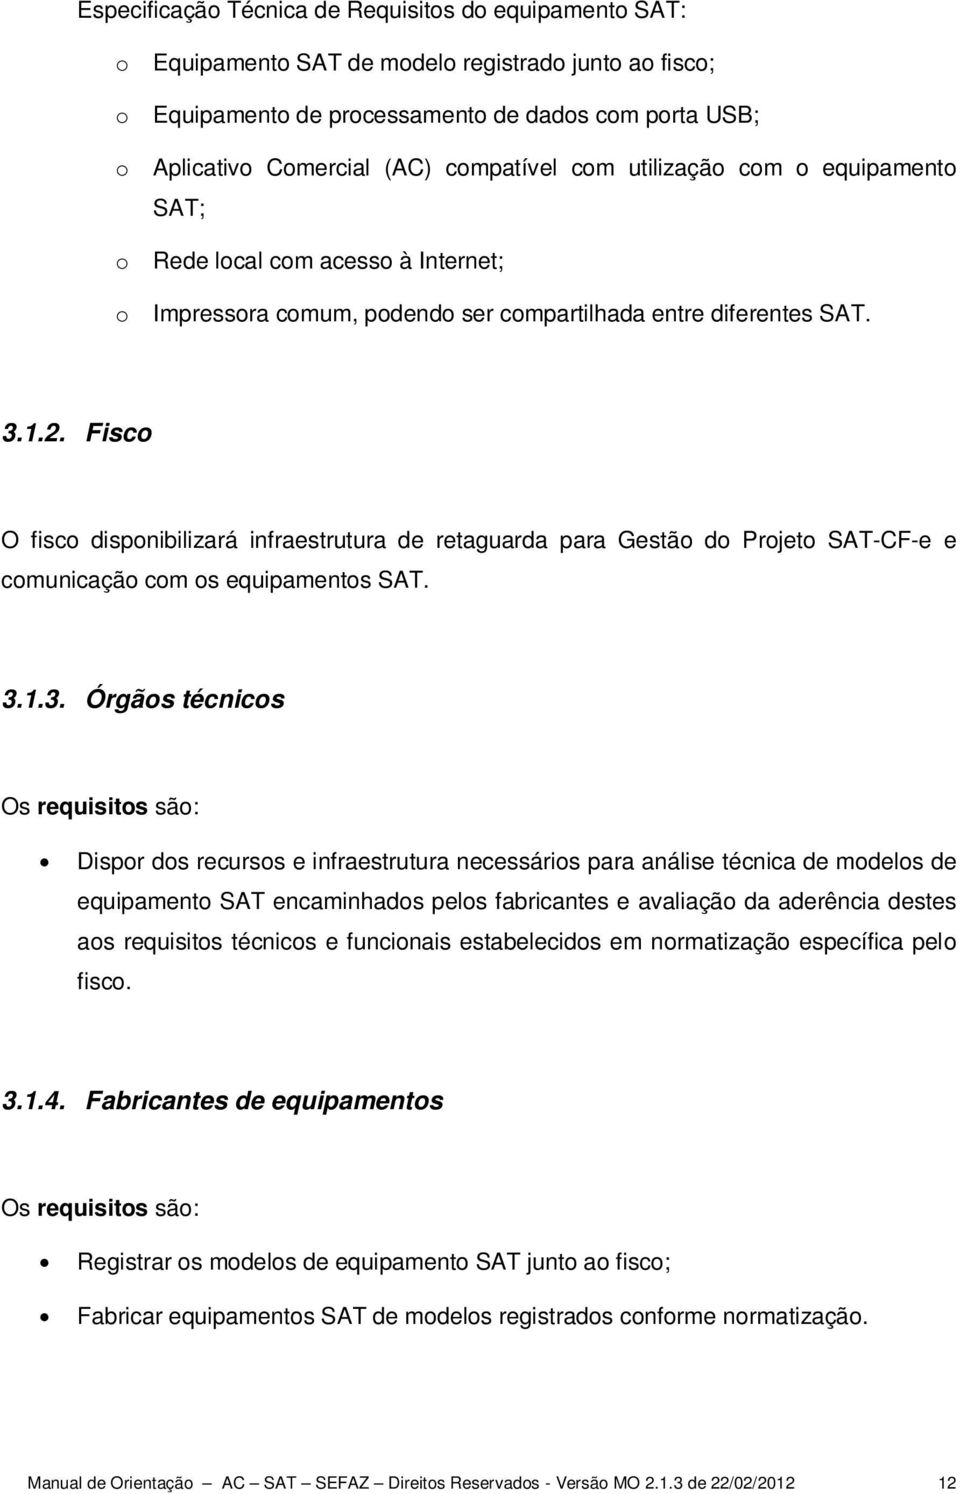 Fisco O fisco disponibilizará infraestrutura de retaguarda para Gestão do Projeto SAT-CF-e e comunicação com os equipamentos SAT. 3.